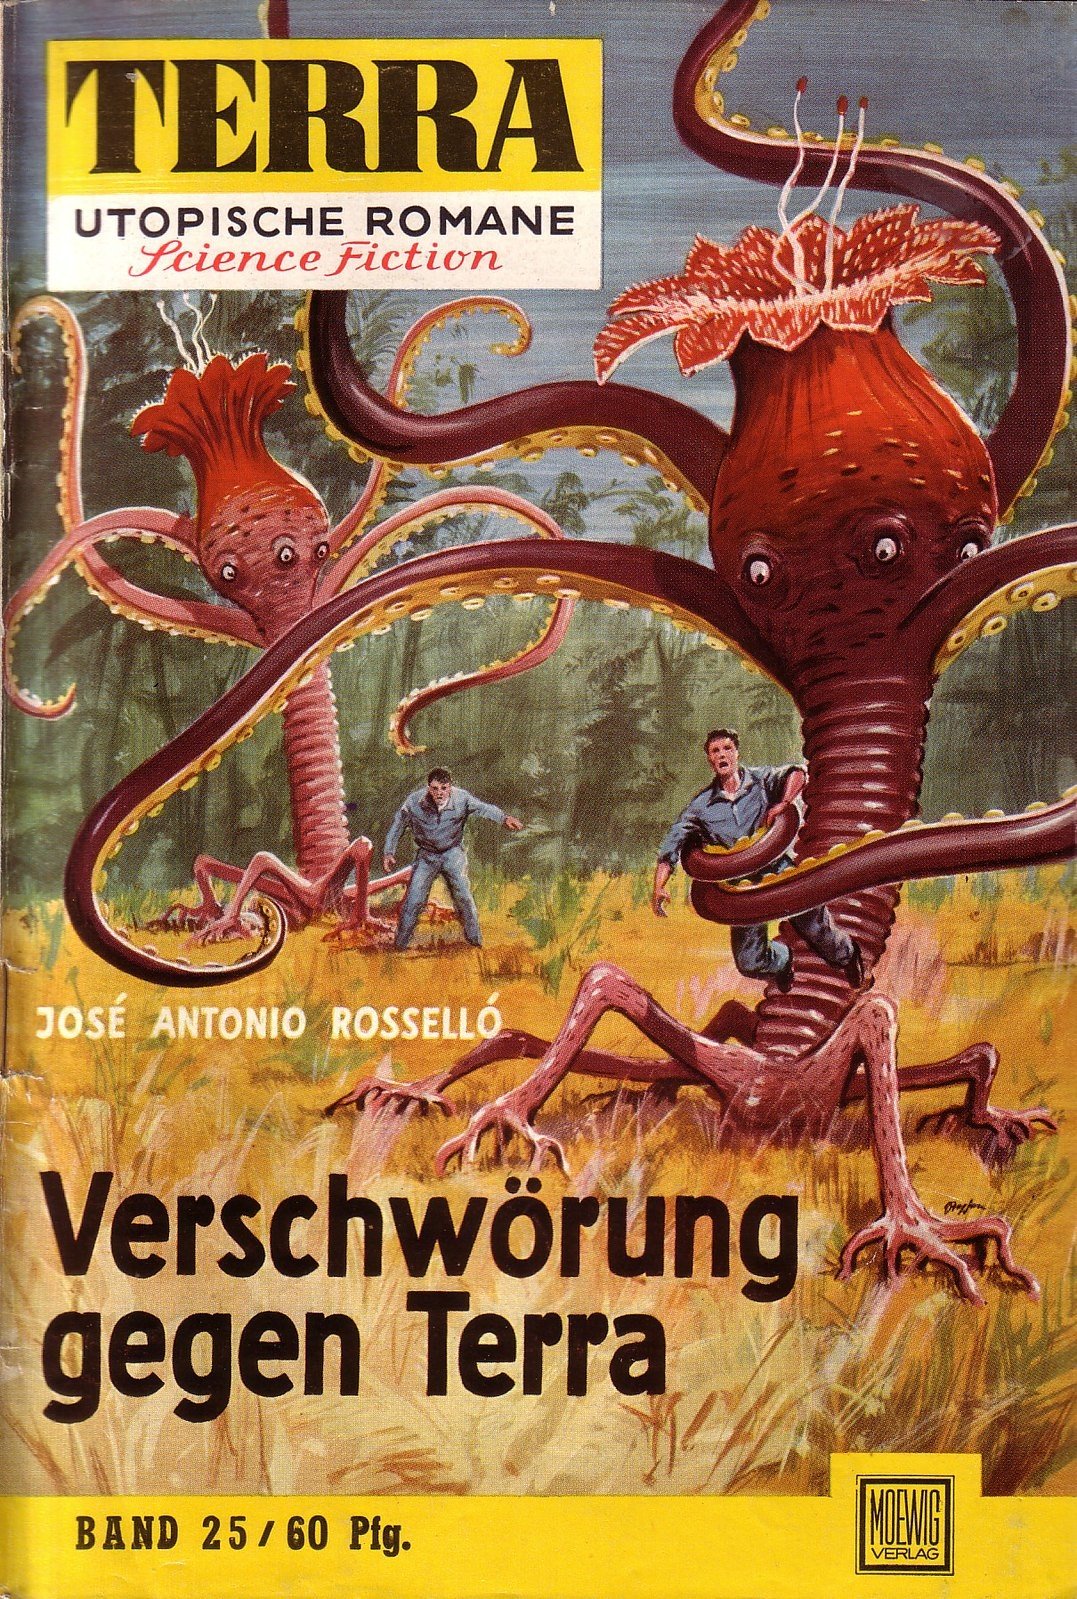 Космические монстры на обложках немецкого Sci-fi журнала Terra